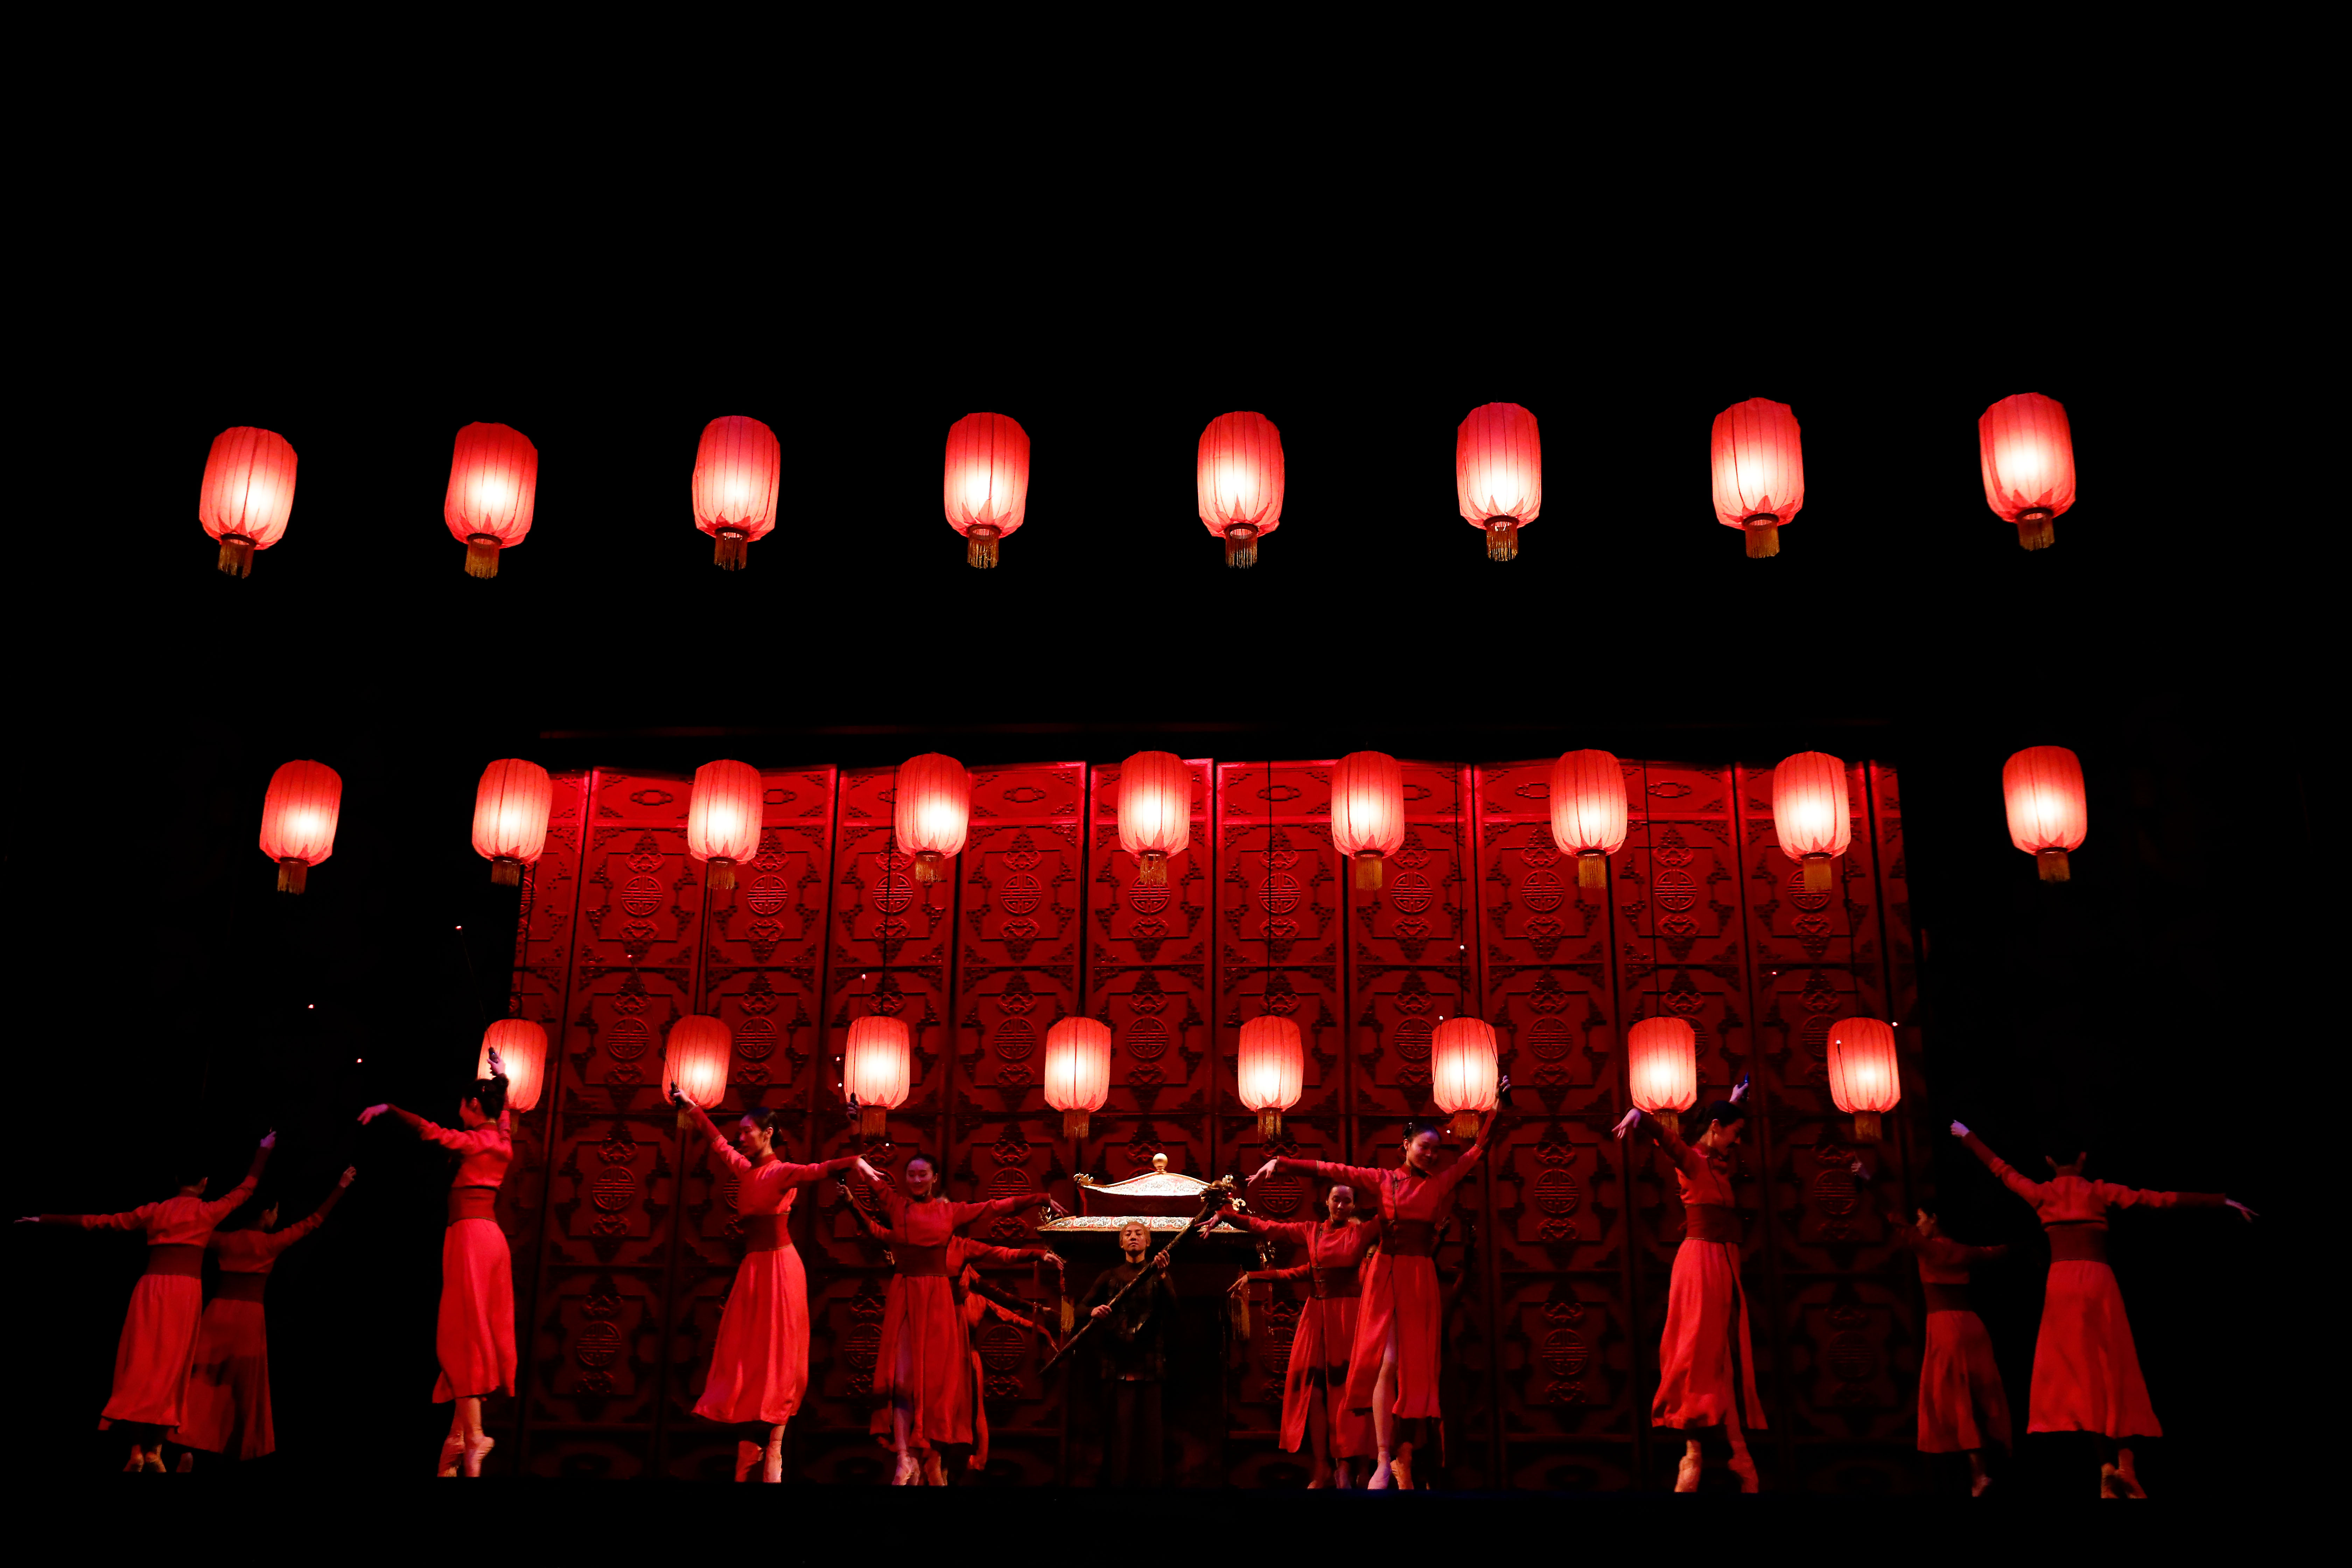 中芭舞剧《大红灯笼高高挂》重返肯尼迪艺术中心